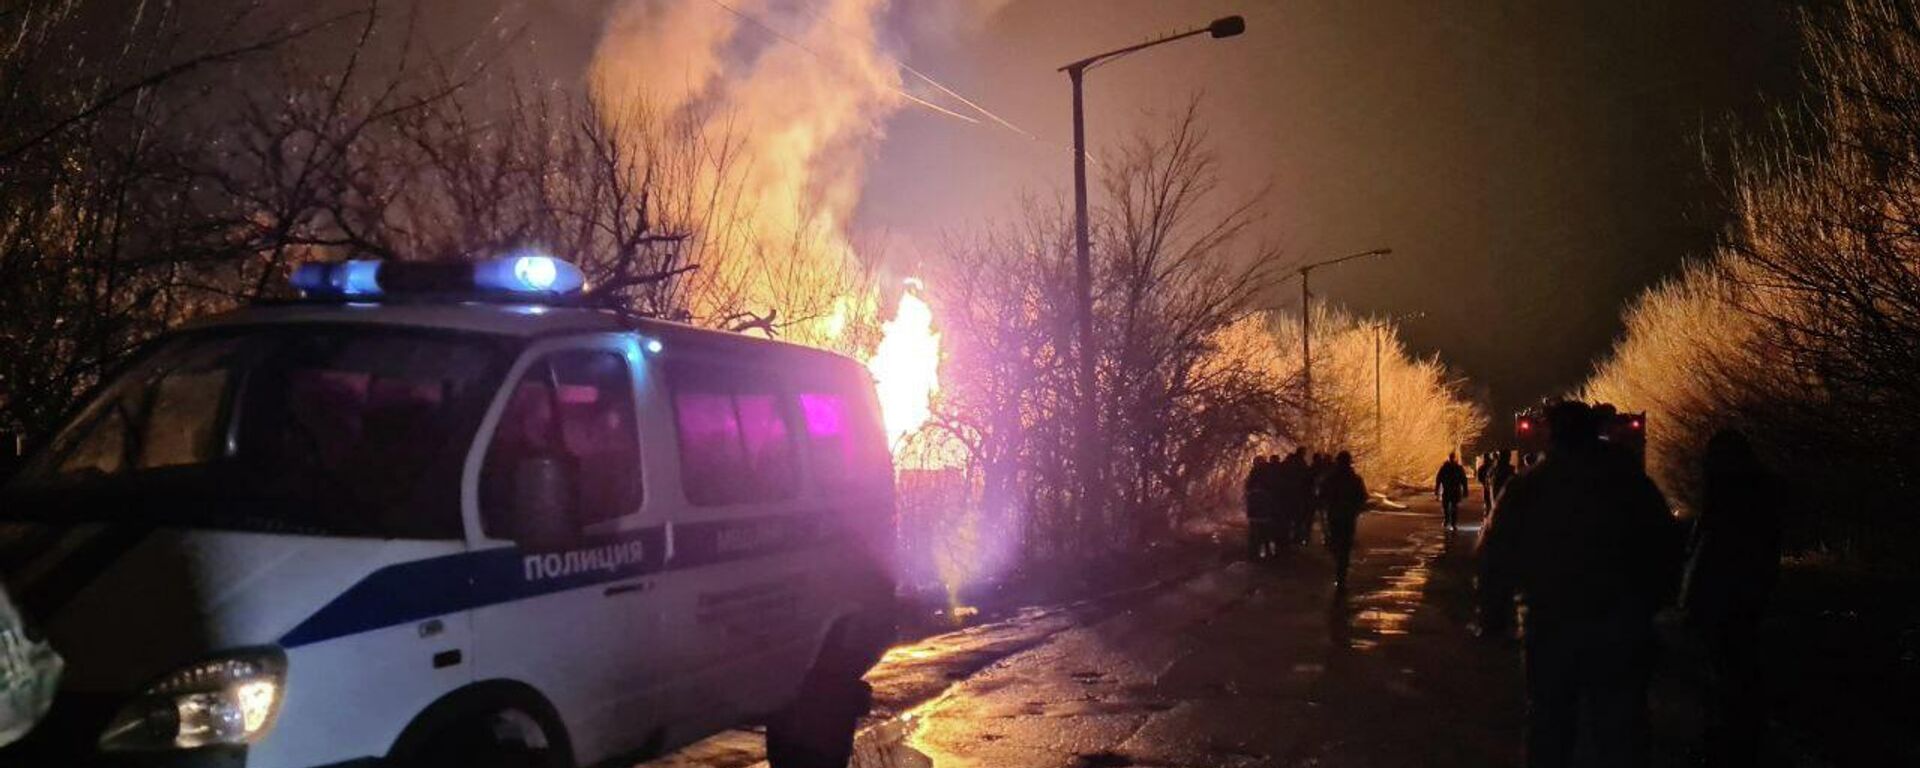 Incendie à Lougansk suite à une explosion survenue à une station service, dans la nuit du 18 au 19 février 2022 - Sputnik Afrique, 1920, 19.02.2022